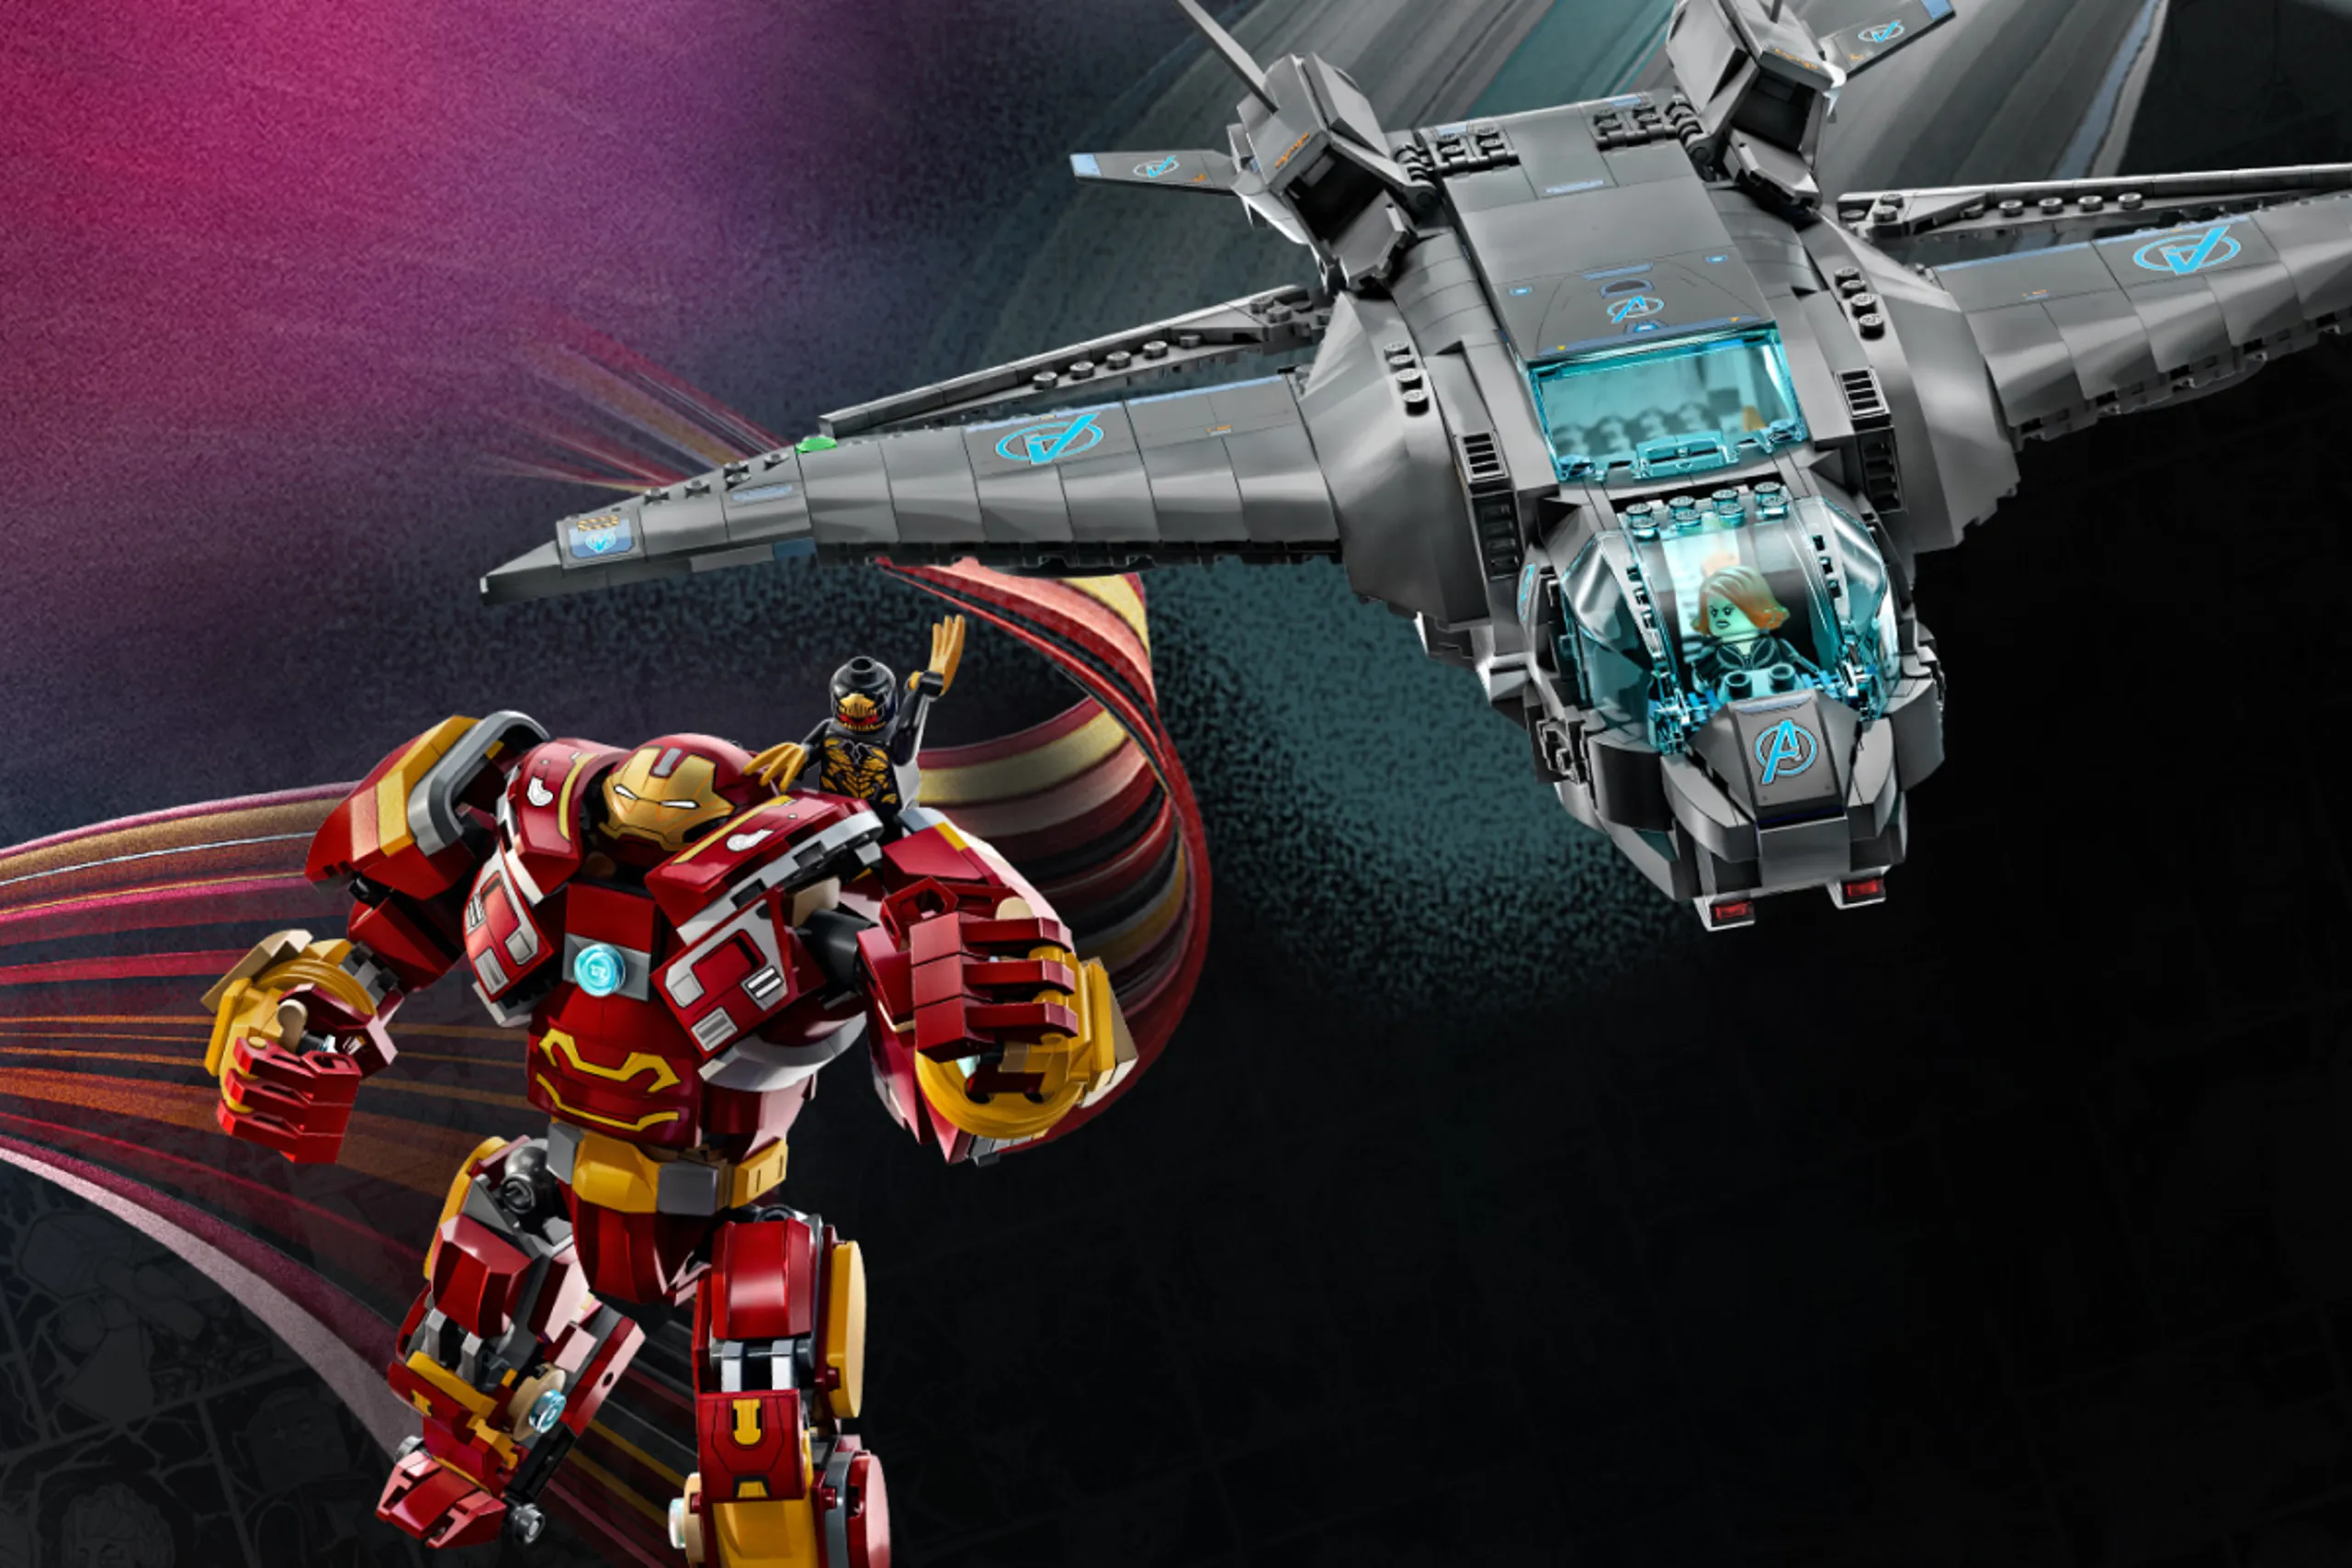 Avengers: Infinity War toys showcase new Marvel villains